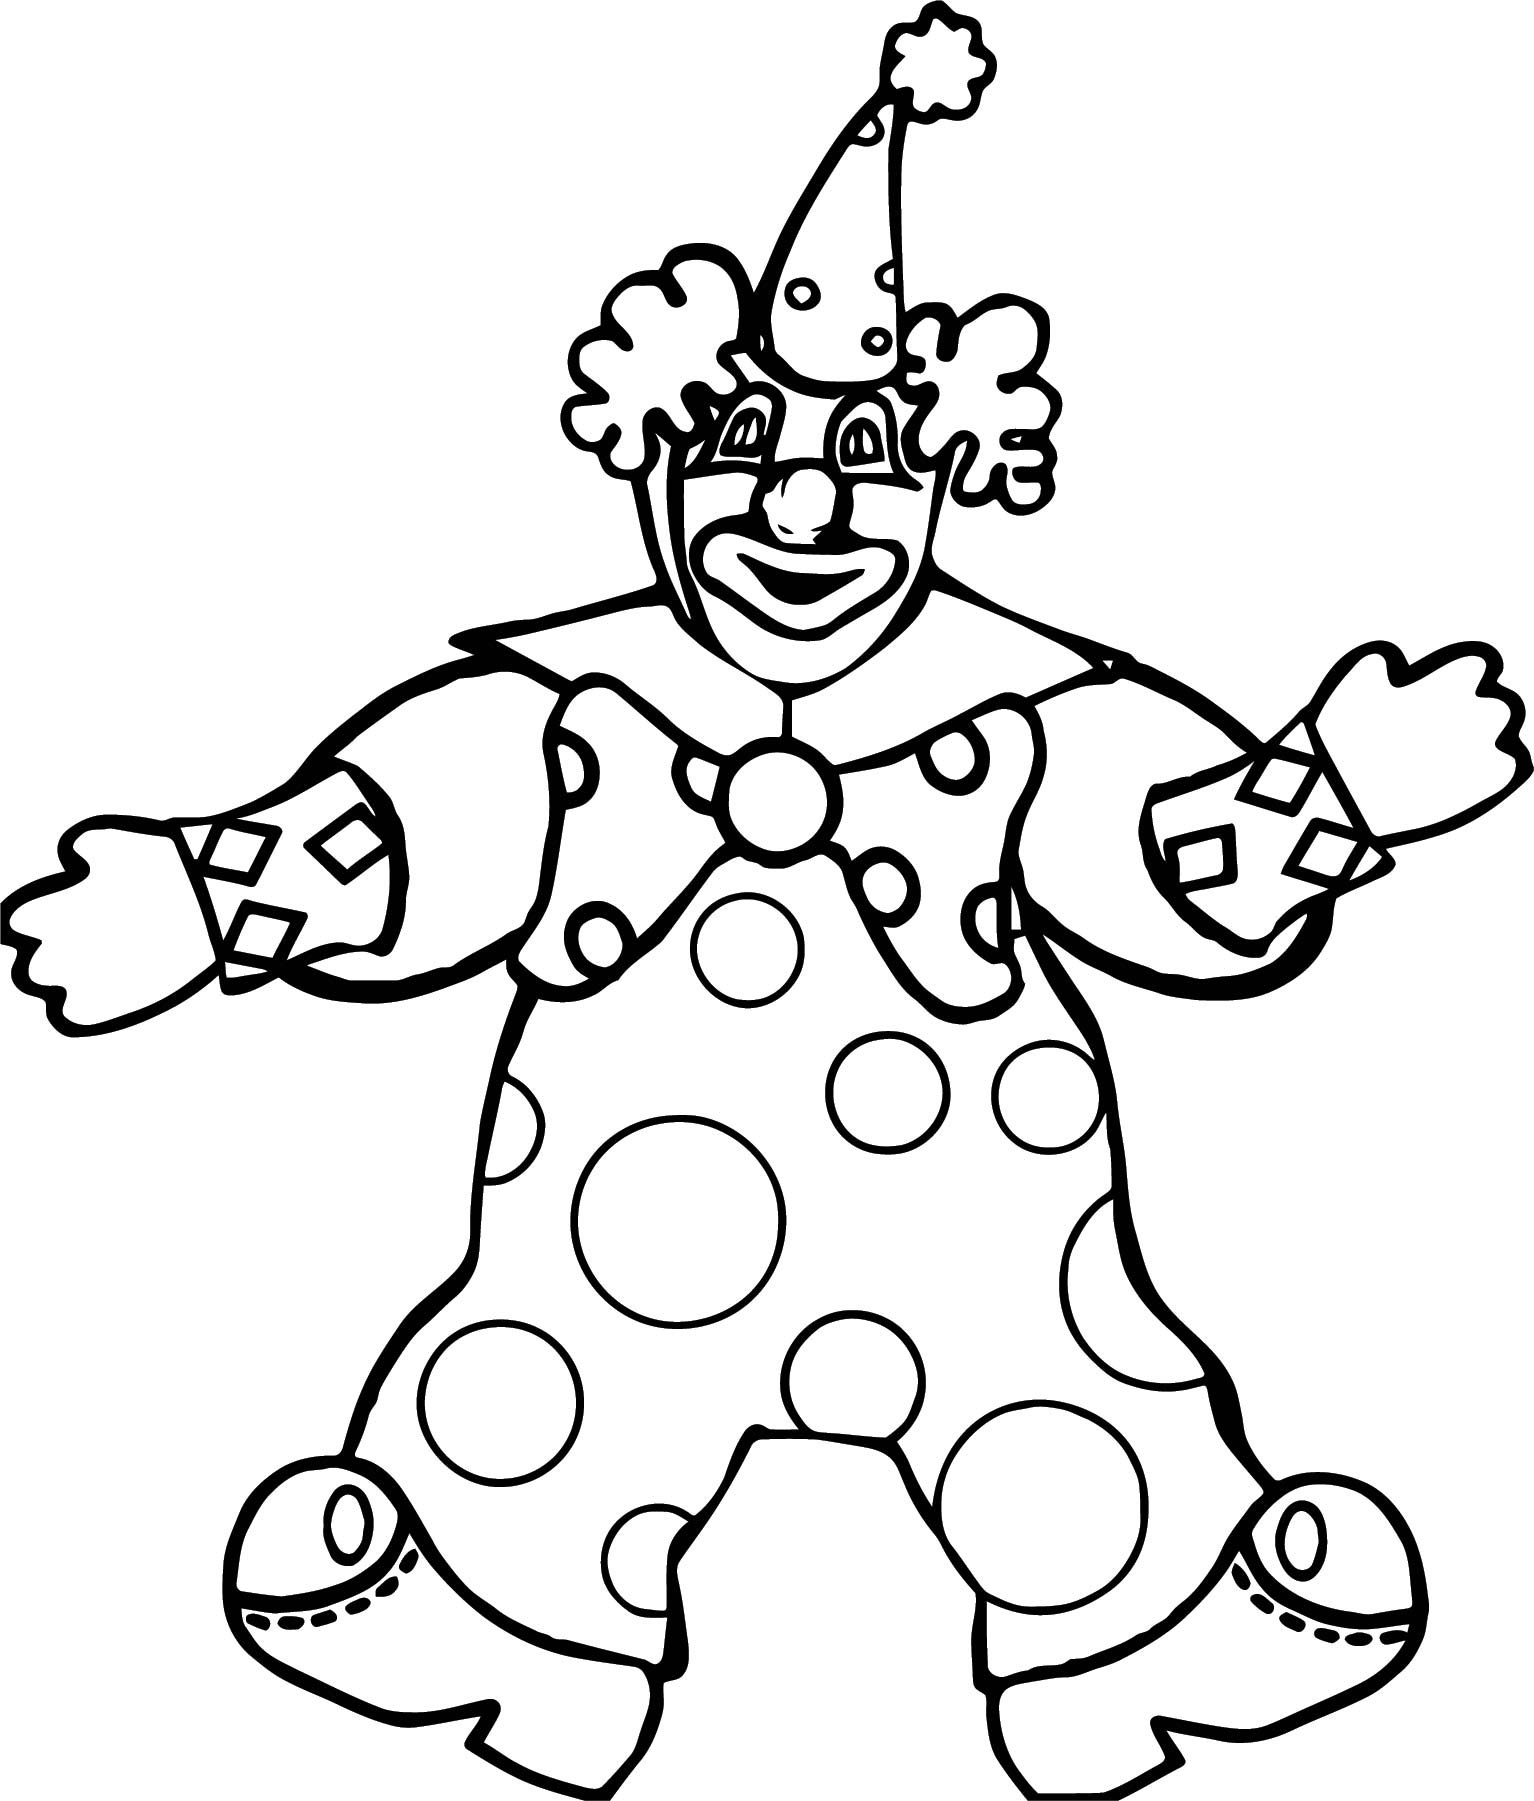 Клоуны раскраска для детей 5 лет. Клоун раскраска. Клоун раскраска для детей. Раскраска весёлый клоун для детей. Клоун для раскрашивания детям.